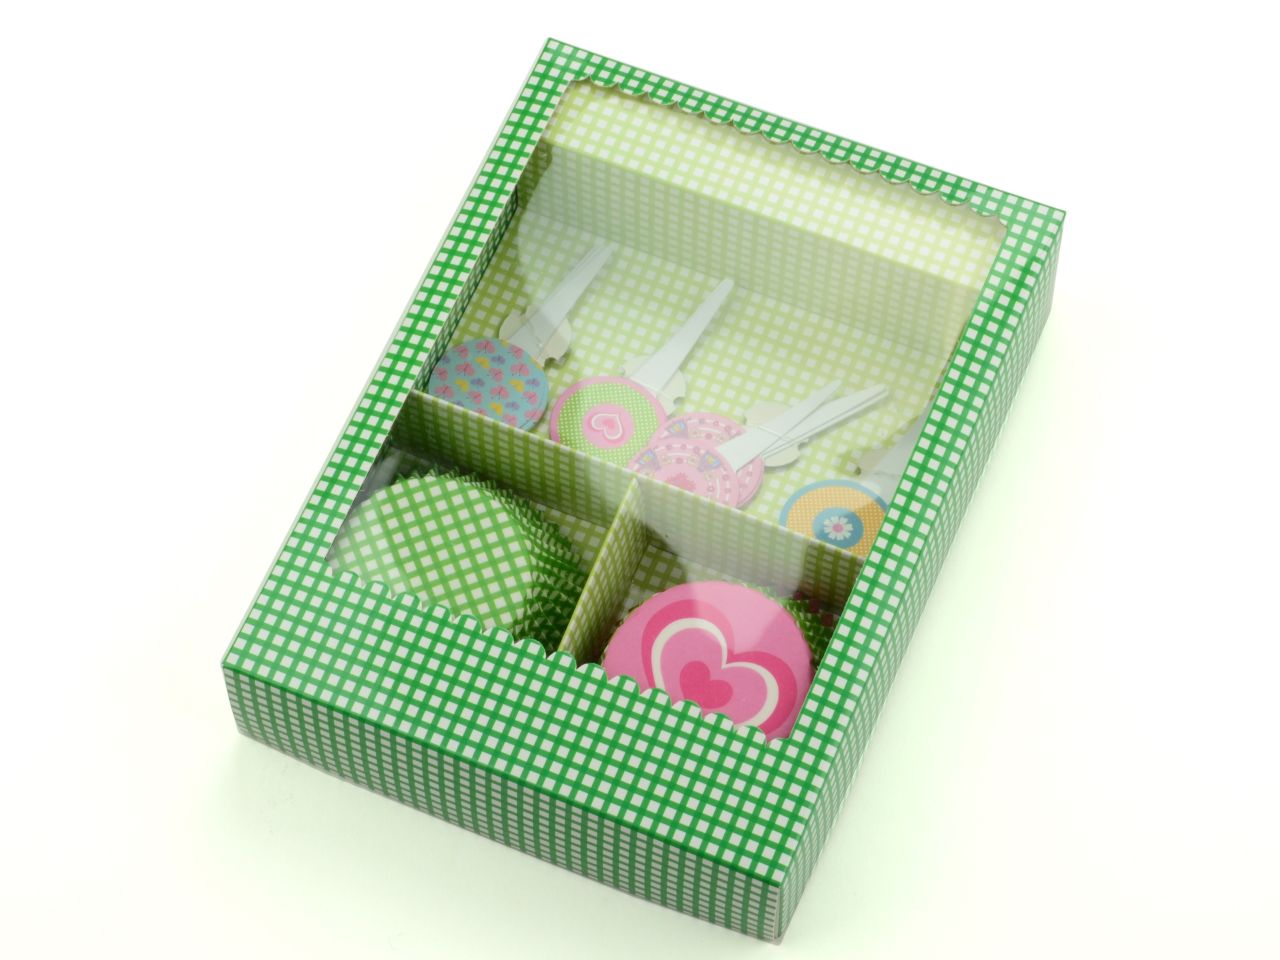 Cupcake-Dekor-Set: Picknick, Papier, Grün & Pink, 24 Förmchen á 5 cm + 12 Topper